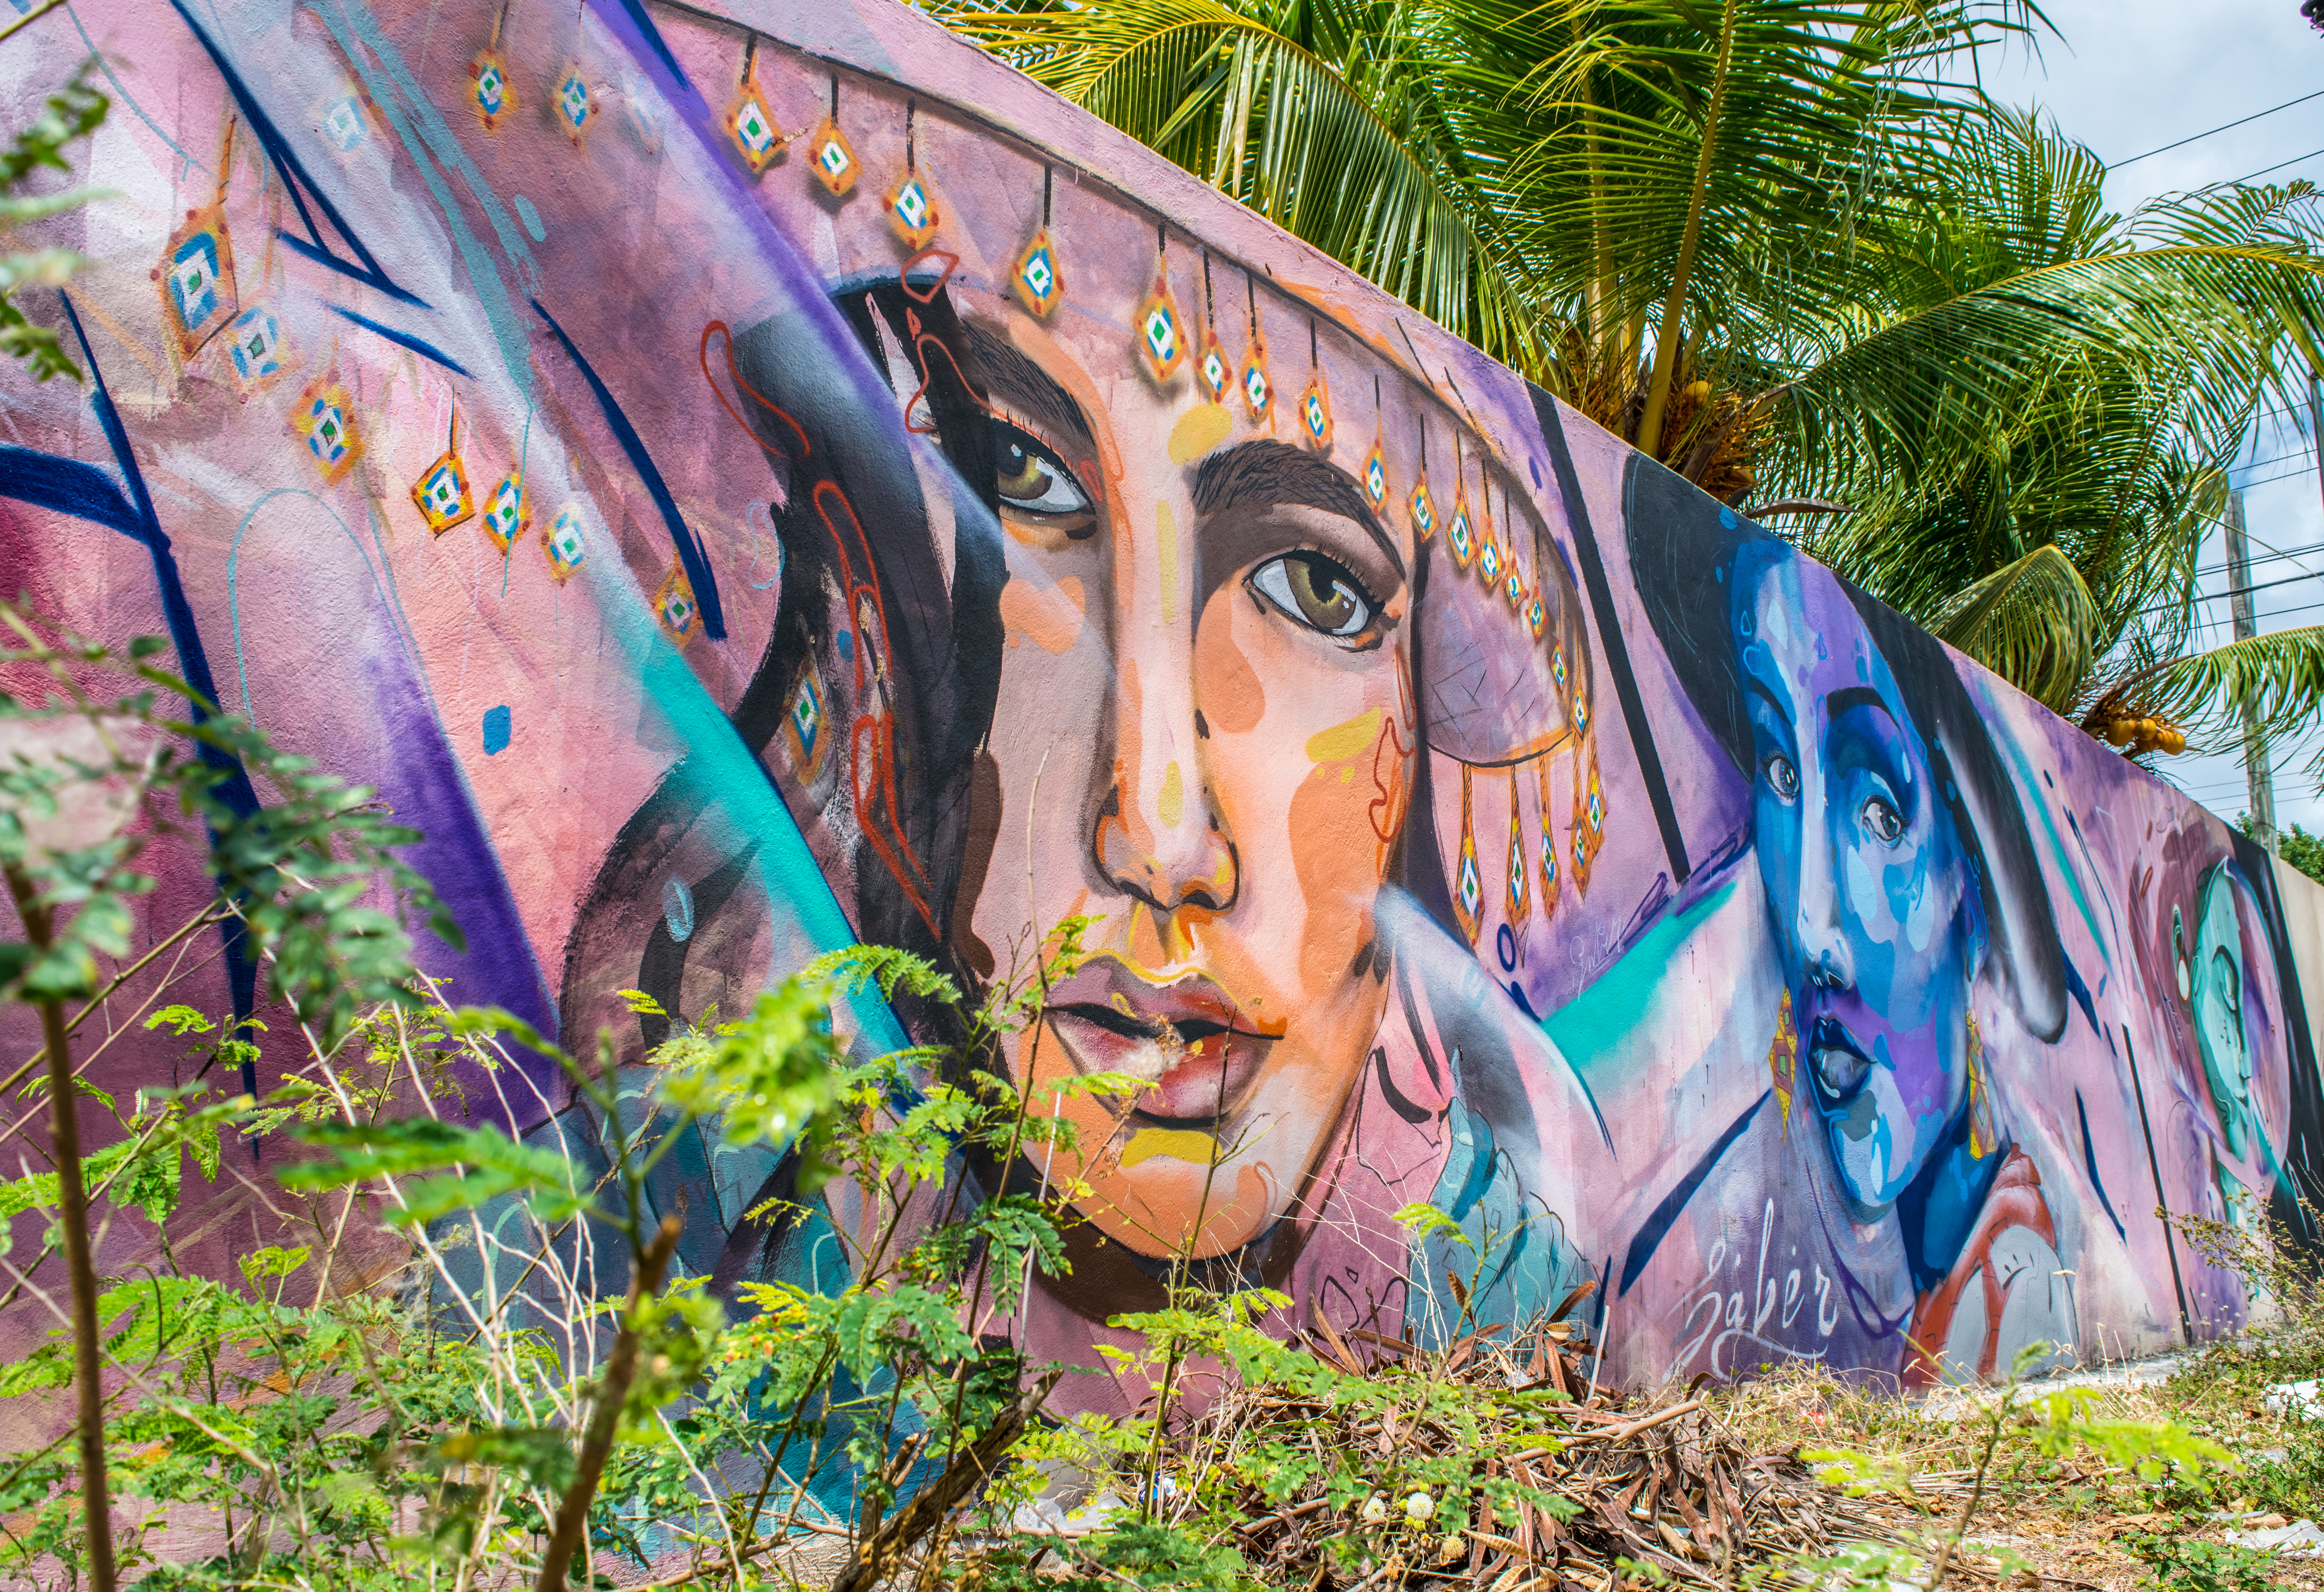 Street Art in Cancun